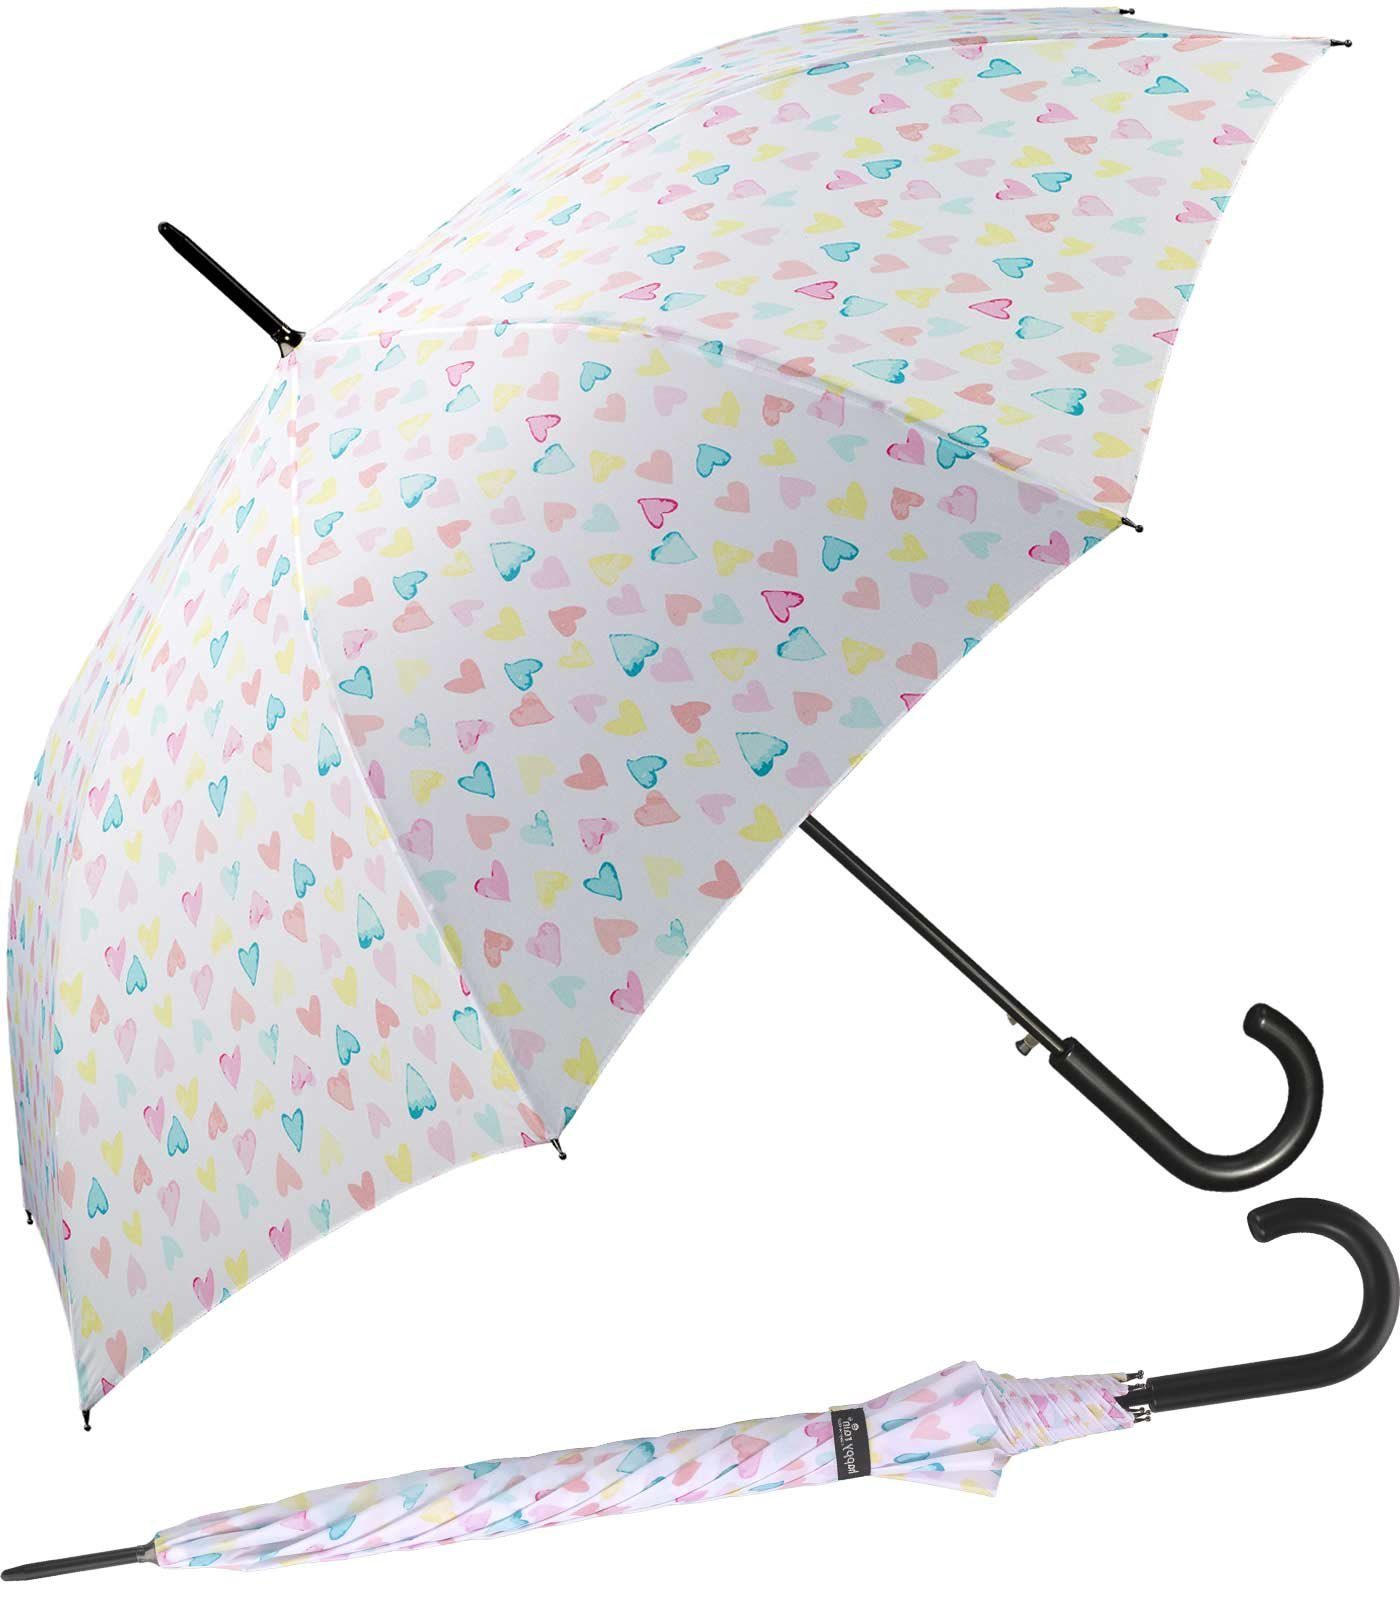 mit zarten RAIN HAPPY zauberhafte Auf-Automatik, großer Pastellfarben Langregenschirm in Herzen Damen-Regenschirm